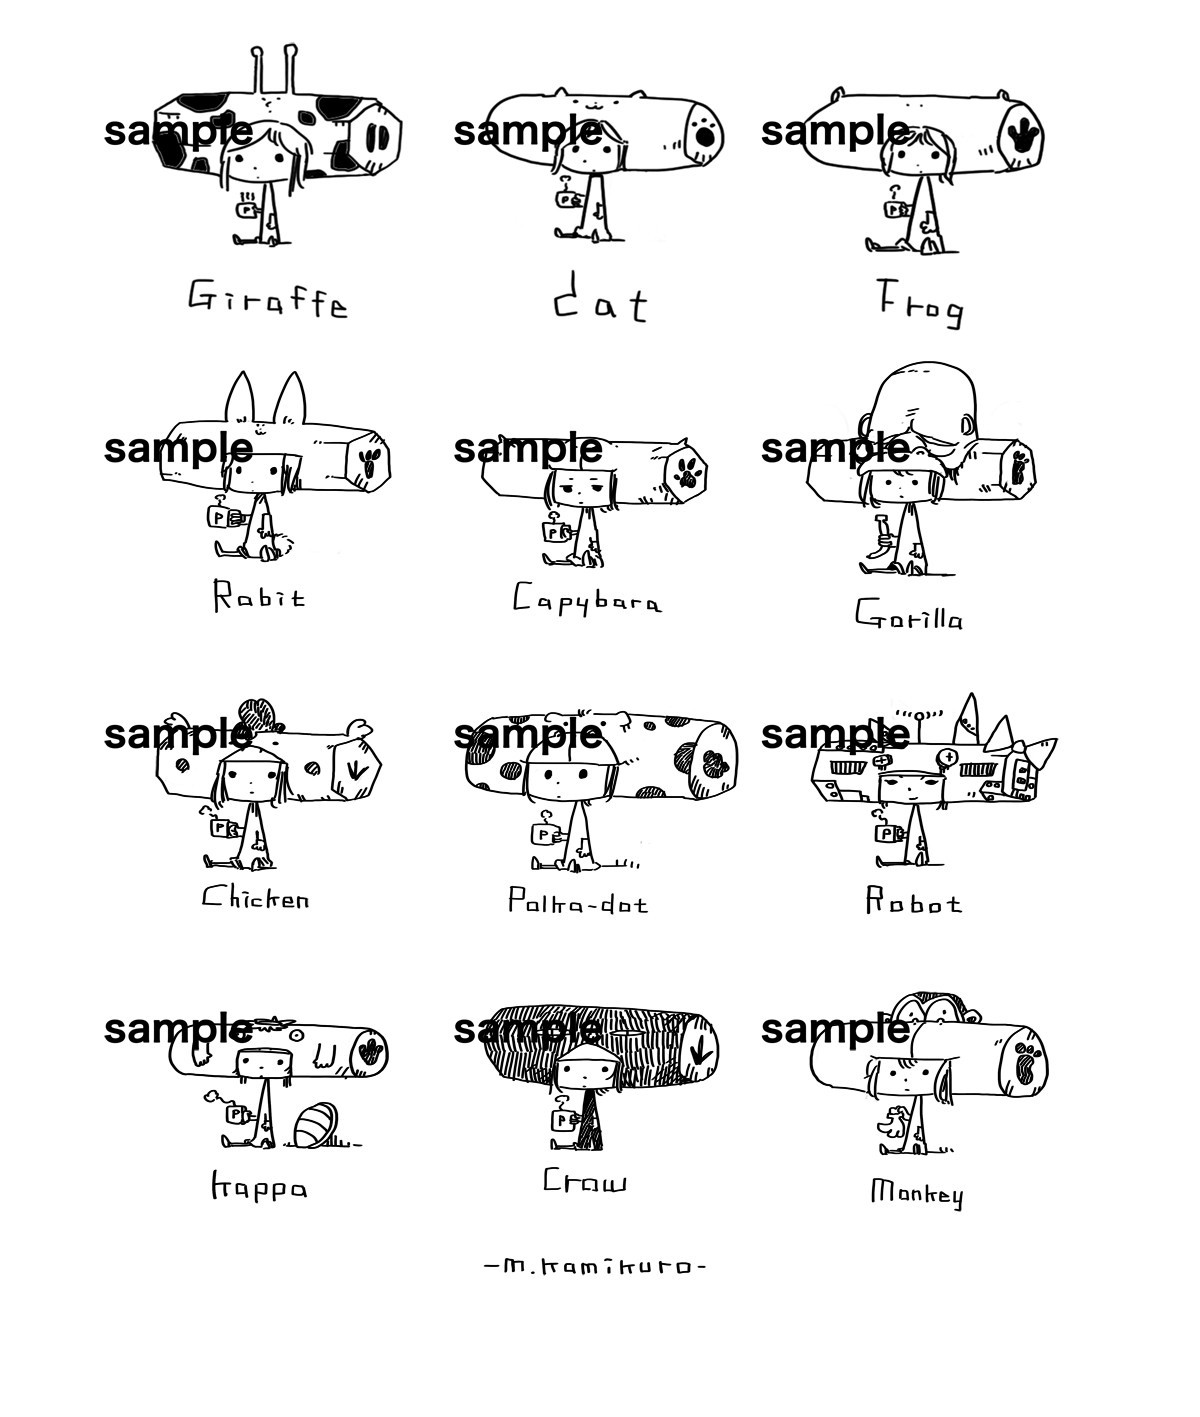 キャラクタースタンド 全18種類 Iichi ハンドメイド クラフト作品 手仕事品の通販